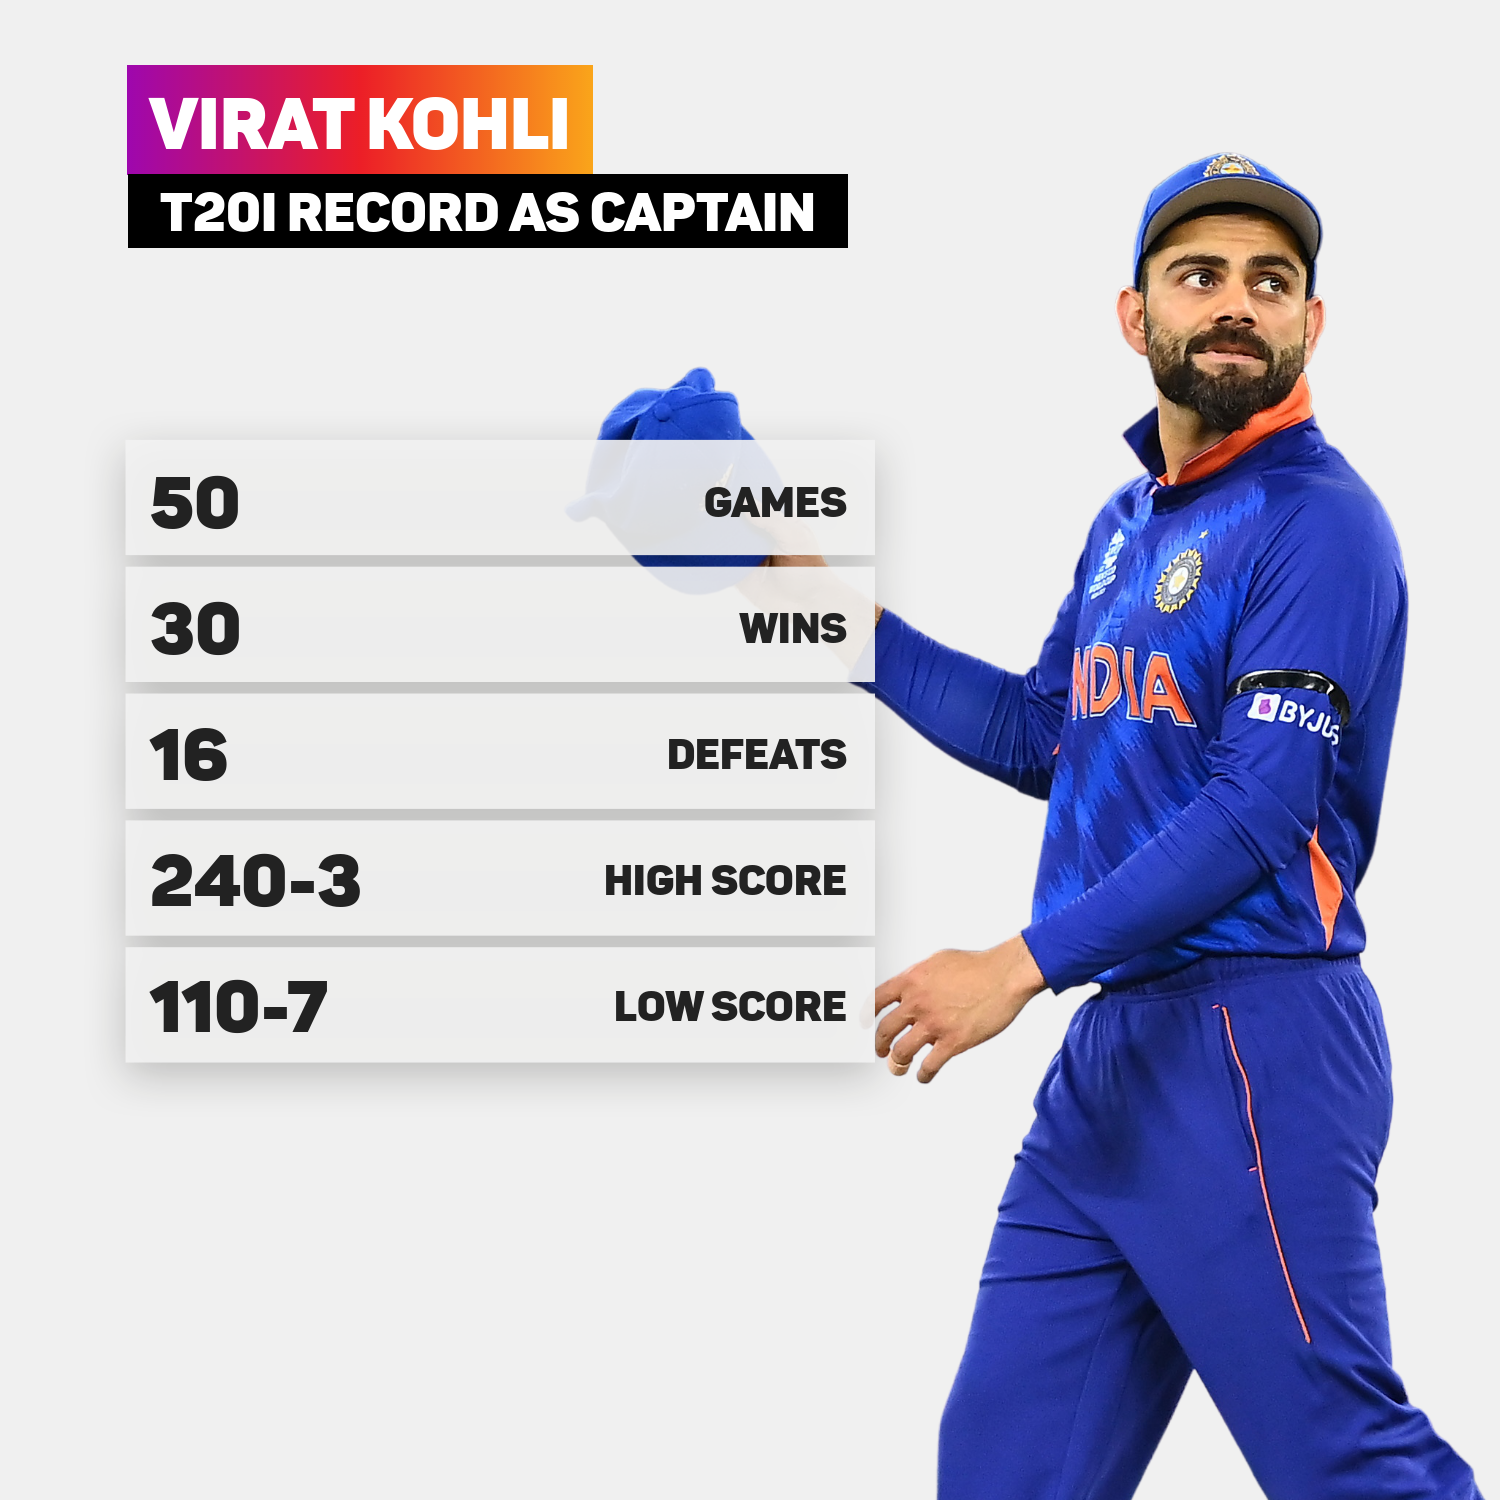 Virat Kohli's record as India's T20 captain